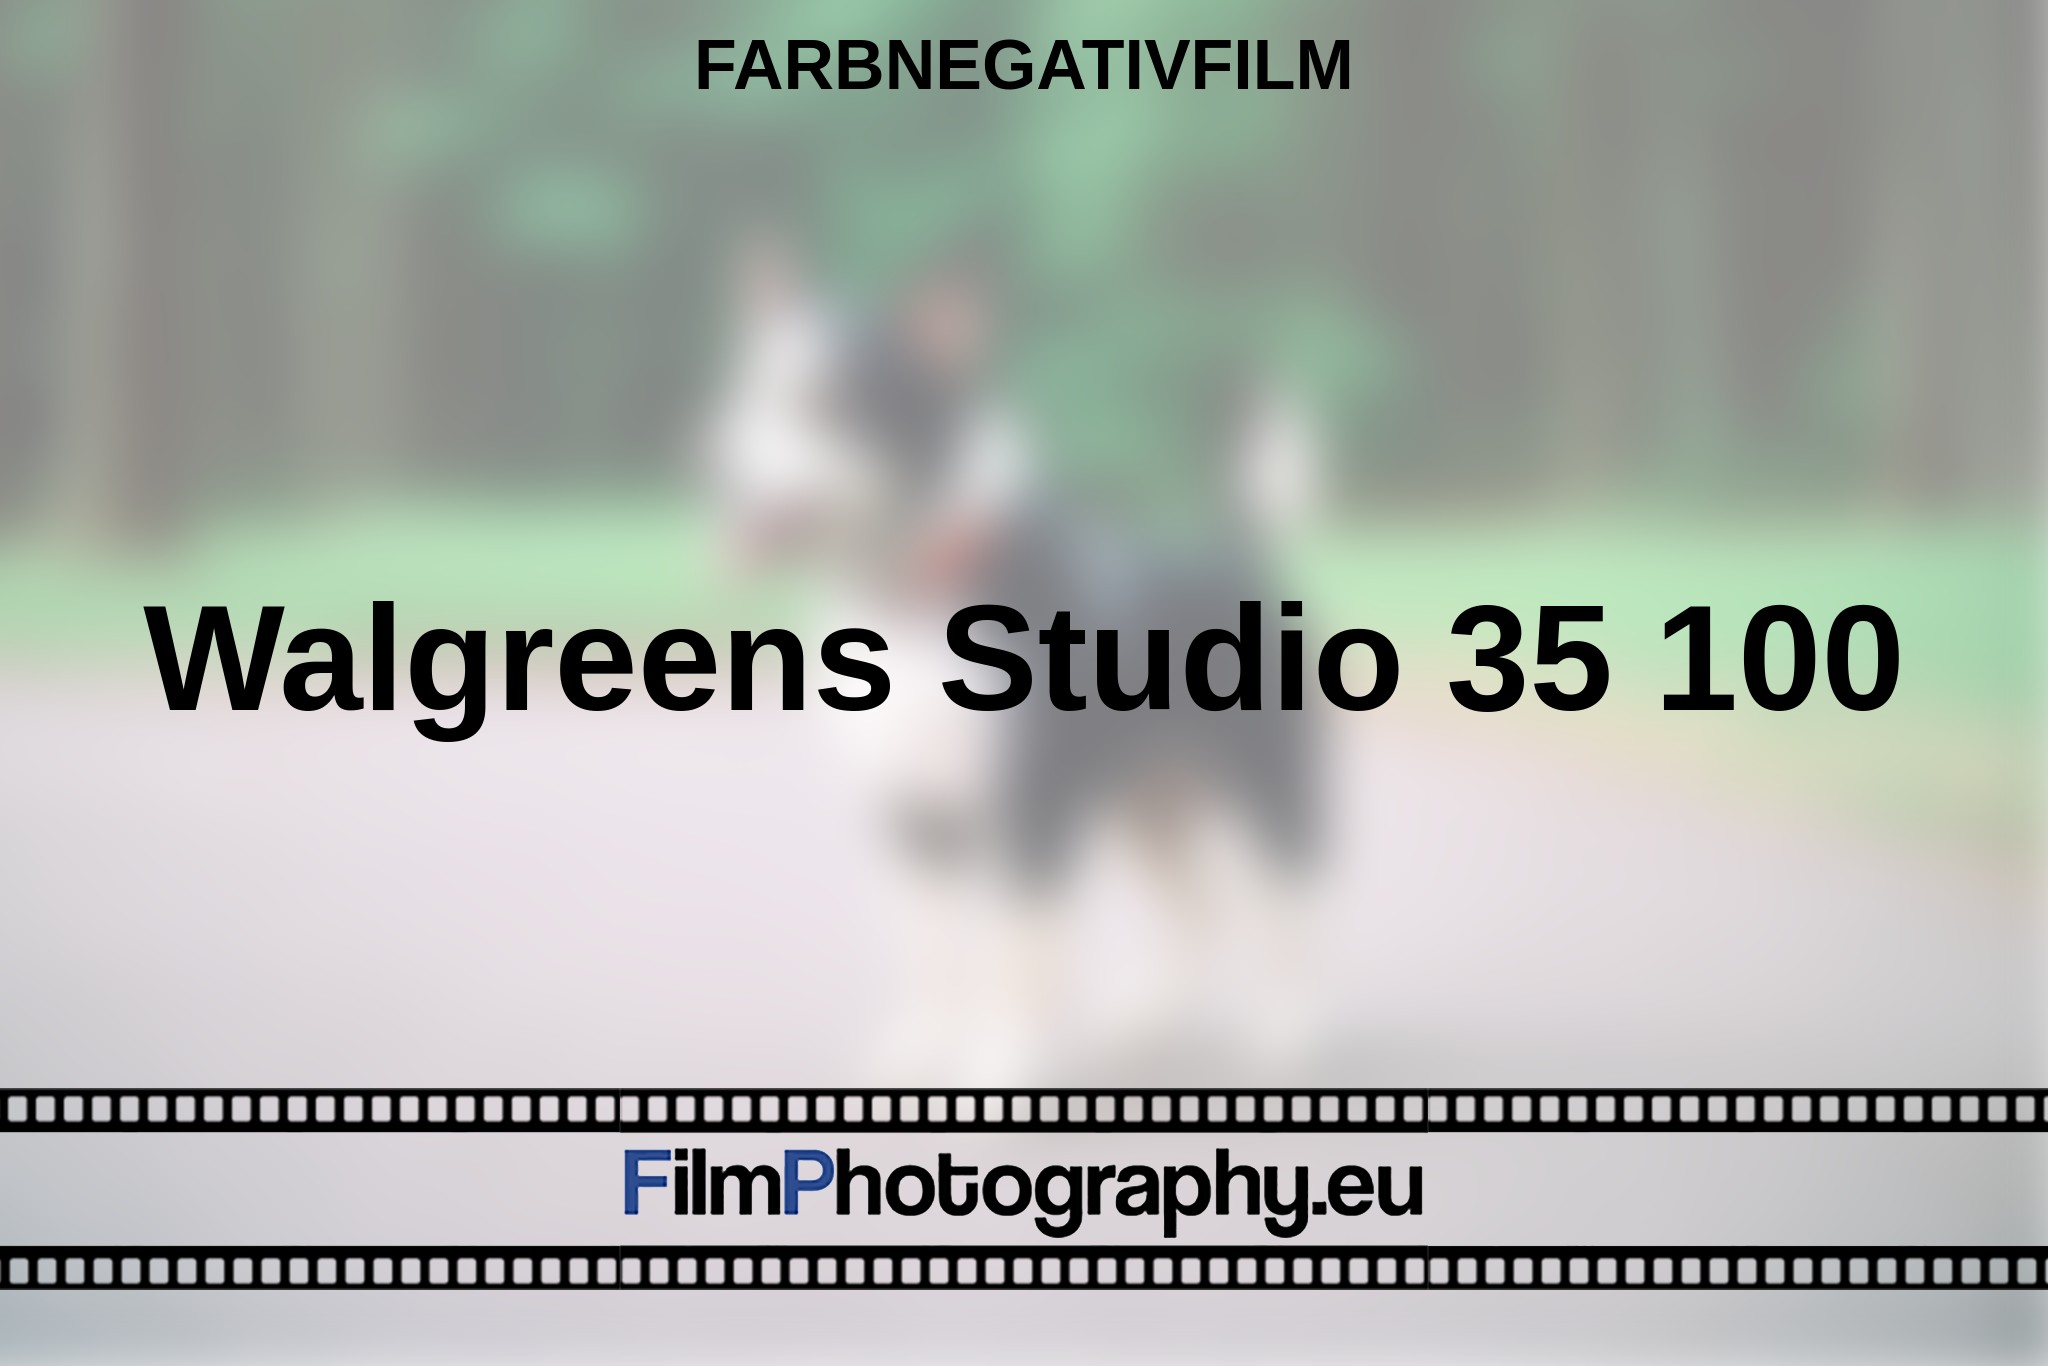 walgreens-studio-35-100-farbnegativfilm-bnv.jpg